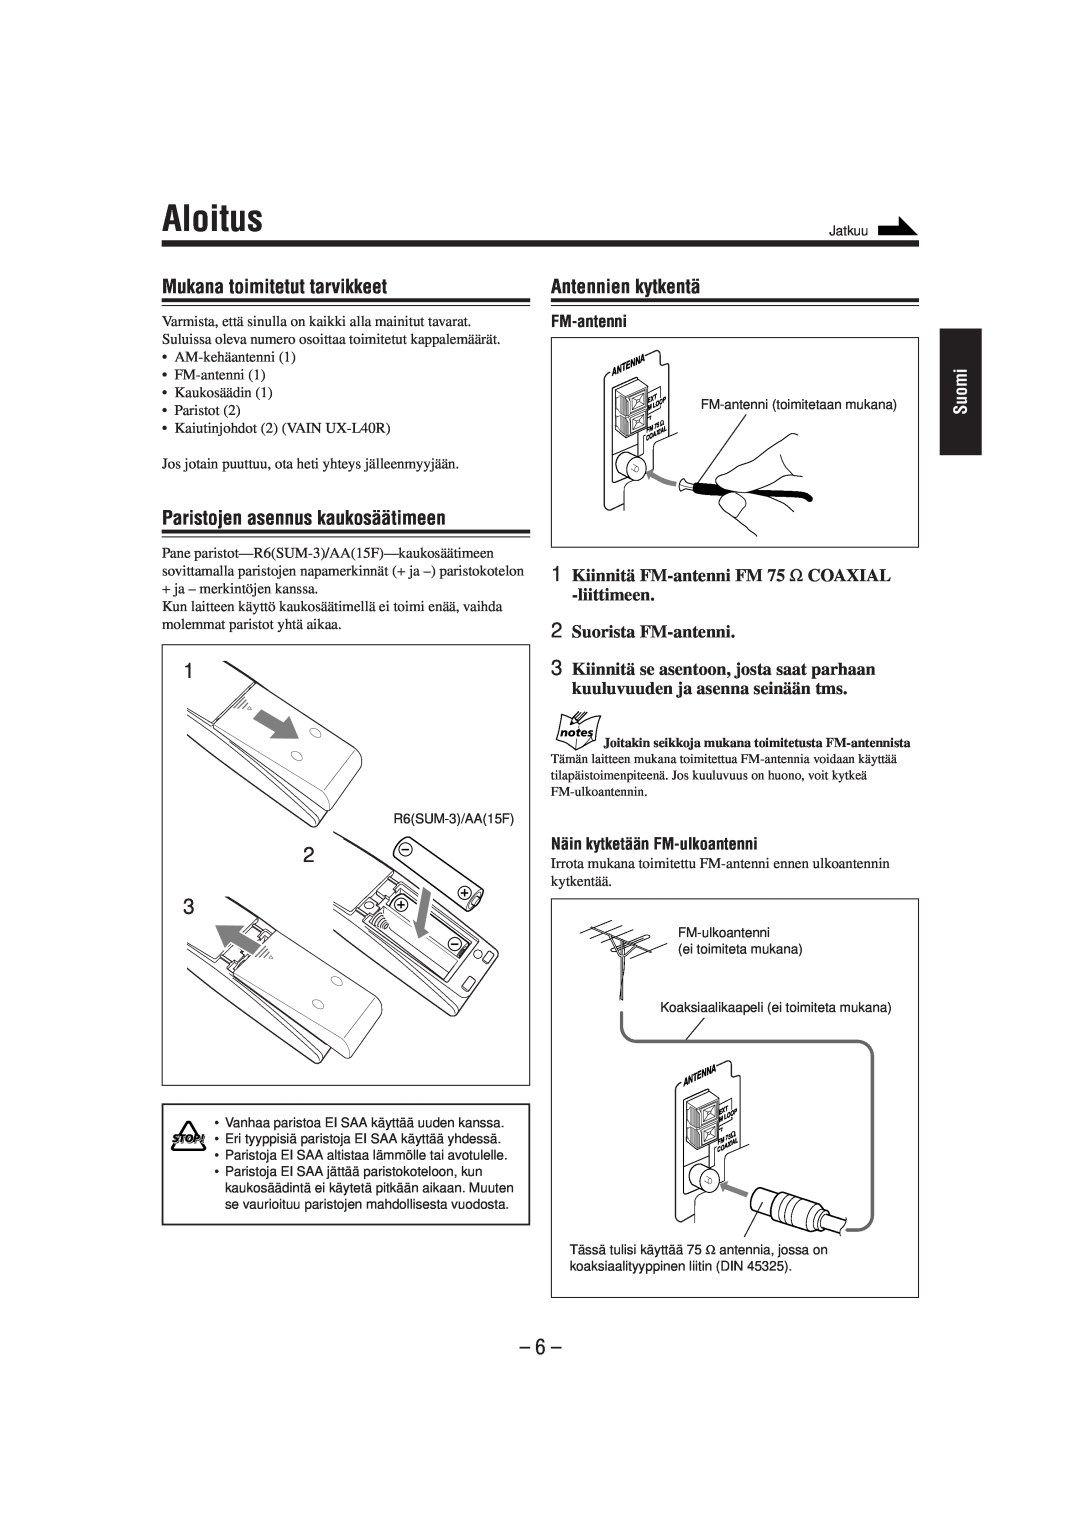 JVC UX-L30R manual Aloitus, Mukana toimitetut tarvikkeet, Antennien kytkentä, Paristojen asennus kaukosäätimeen, FM-antenni 